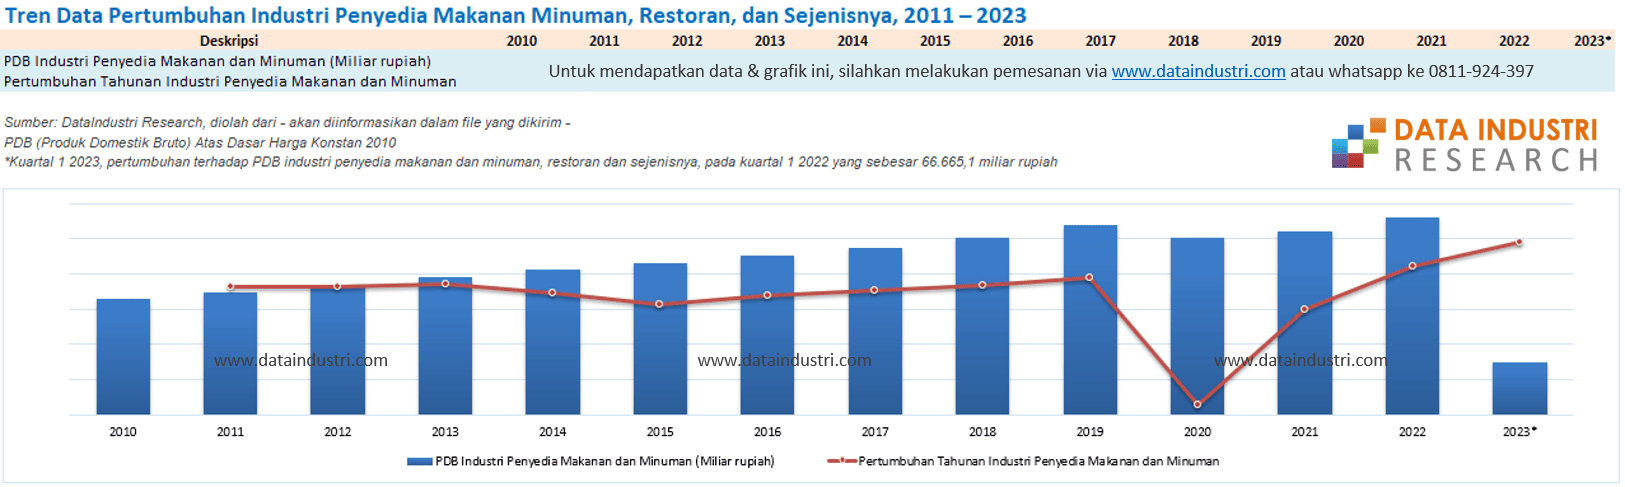 Tren Data Pertumbuhan Industri Penyedia Makanan Minuman, Restoran, dan Sejenisnya, 2011 – 2023